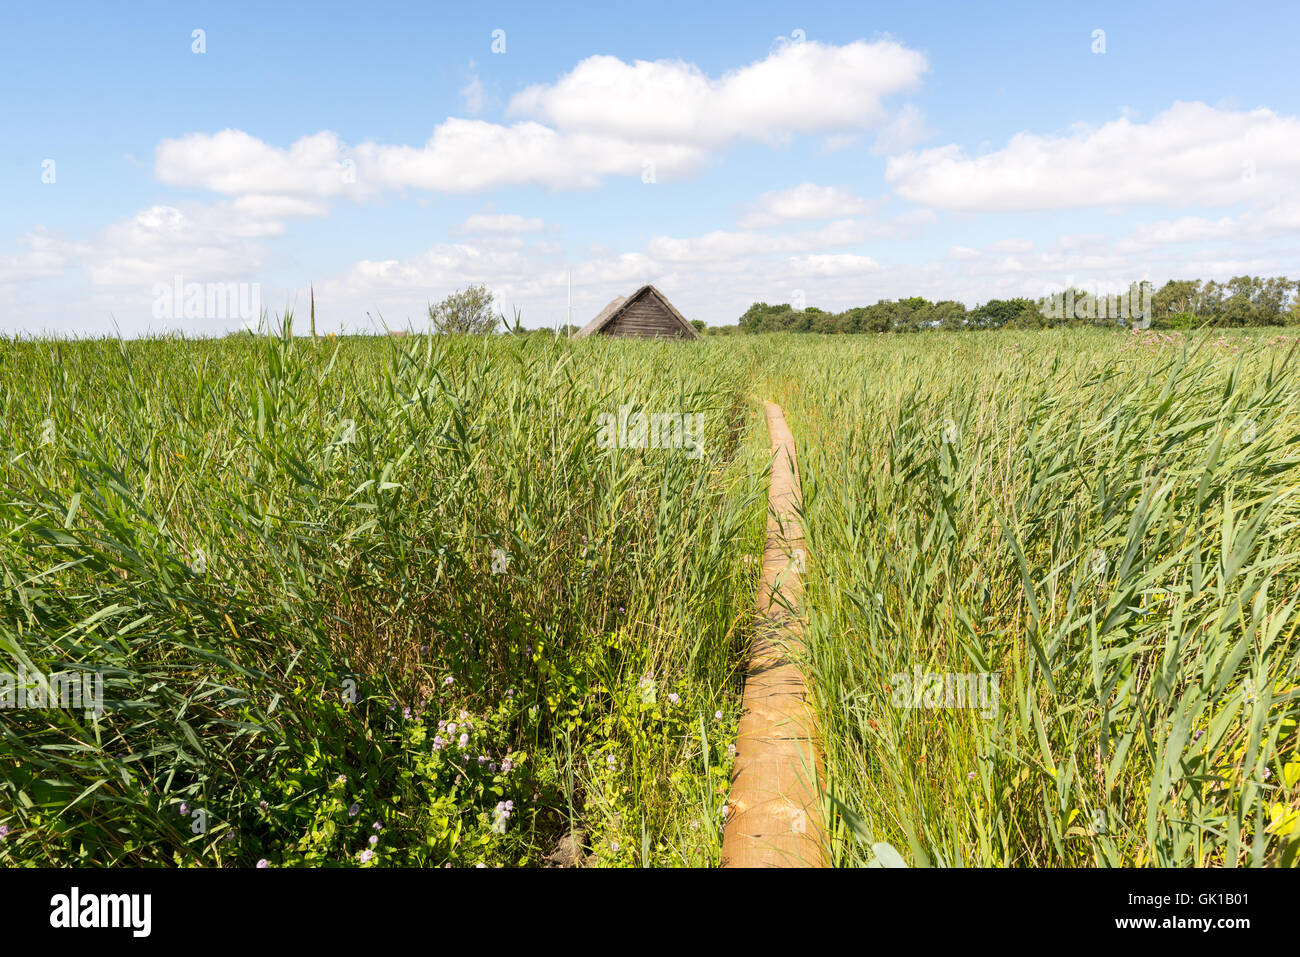 Un sentier mène à travers les vastes roselières dans une hutte de chaume qui semble être plongé dans la végétation. Horsey Estate, Norfolk. Banque D'Images